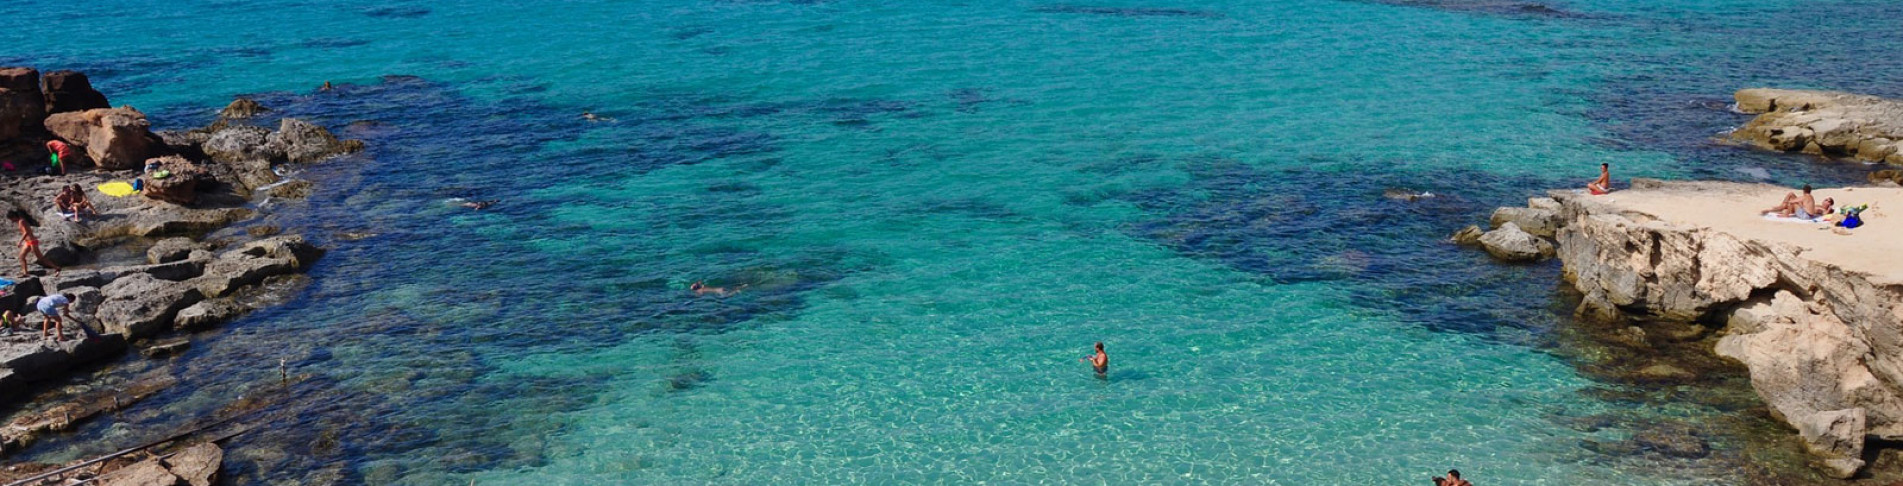 Formentera Urlaub buchen und im klaren Meer schwimmen